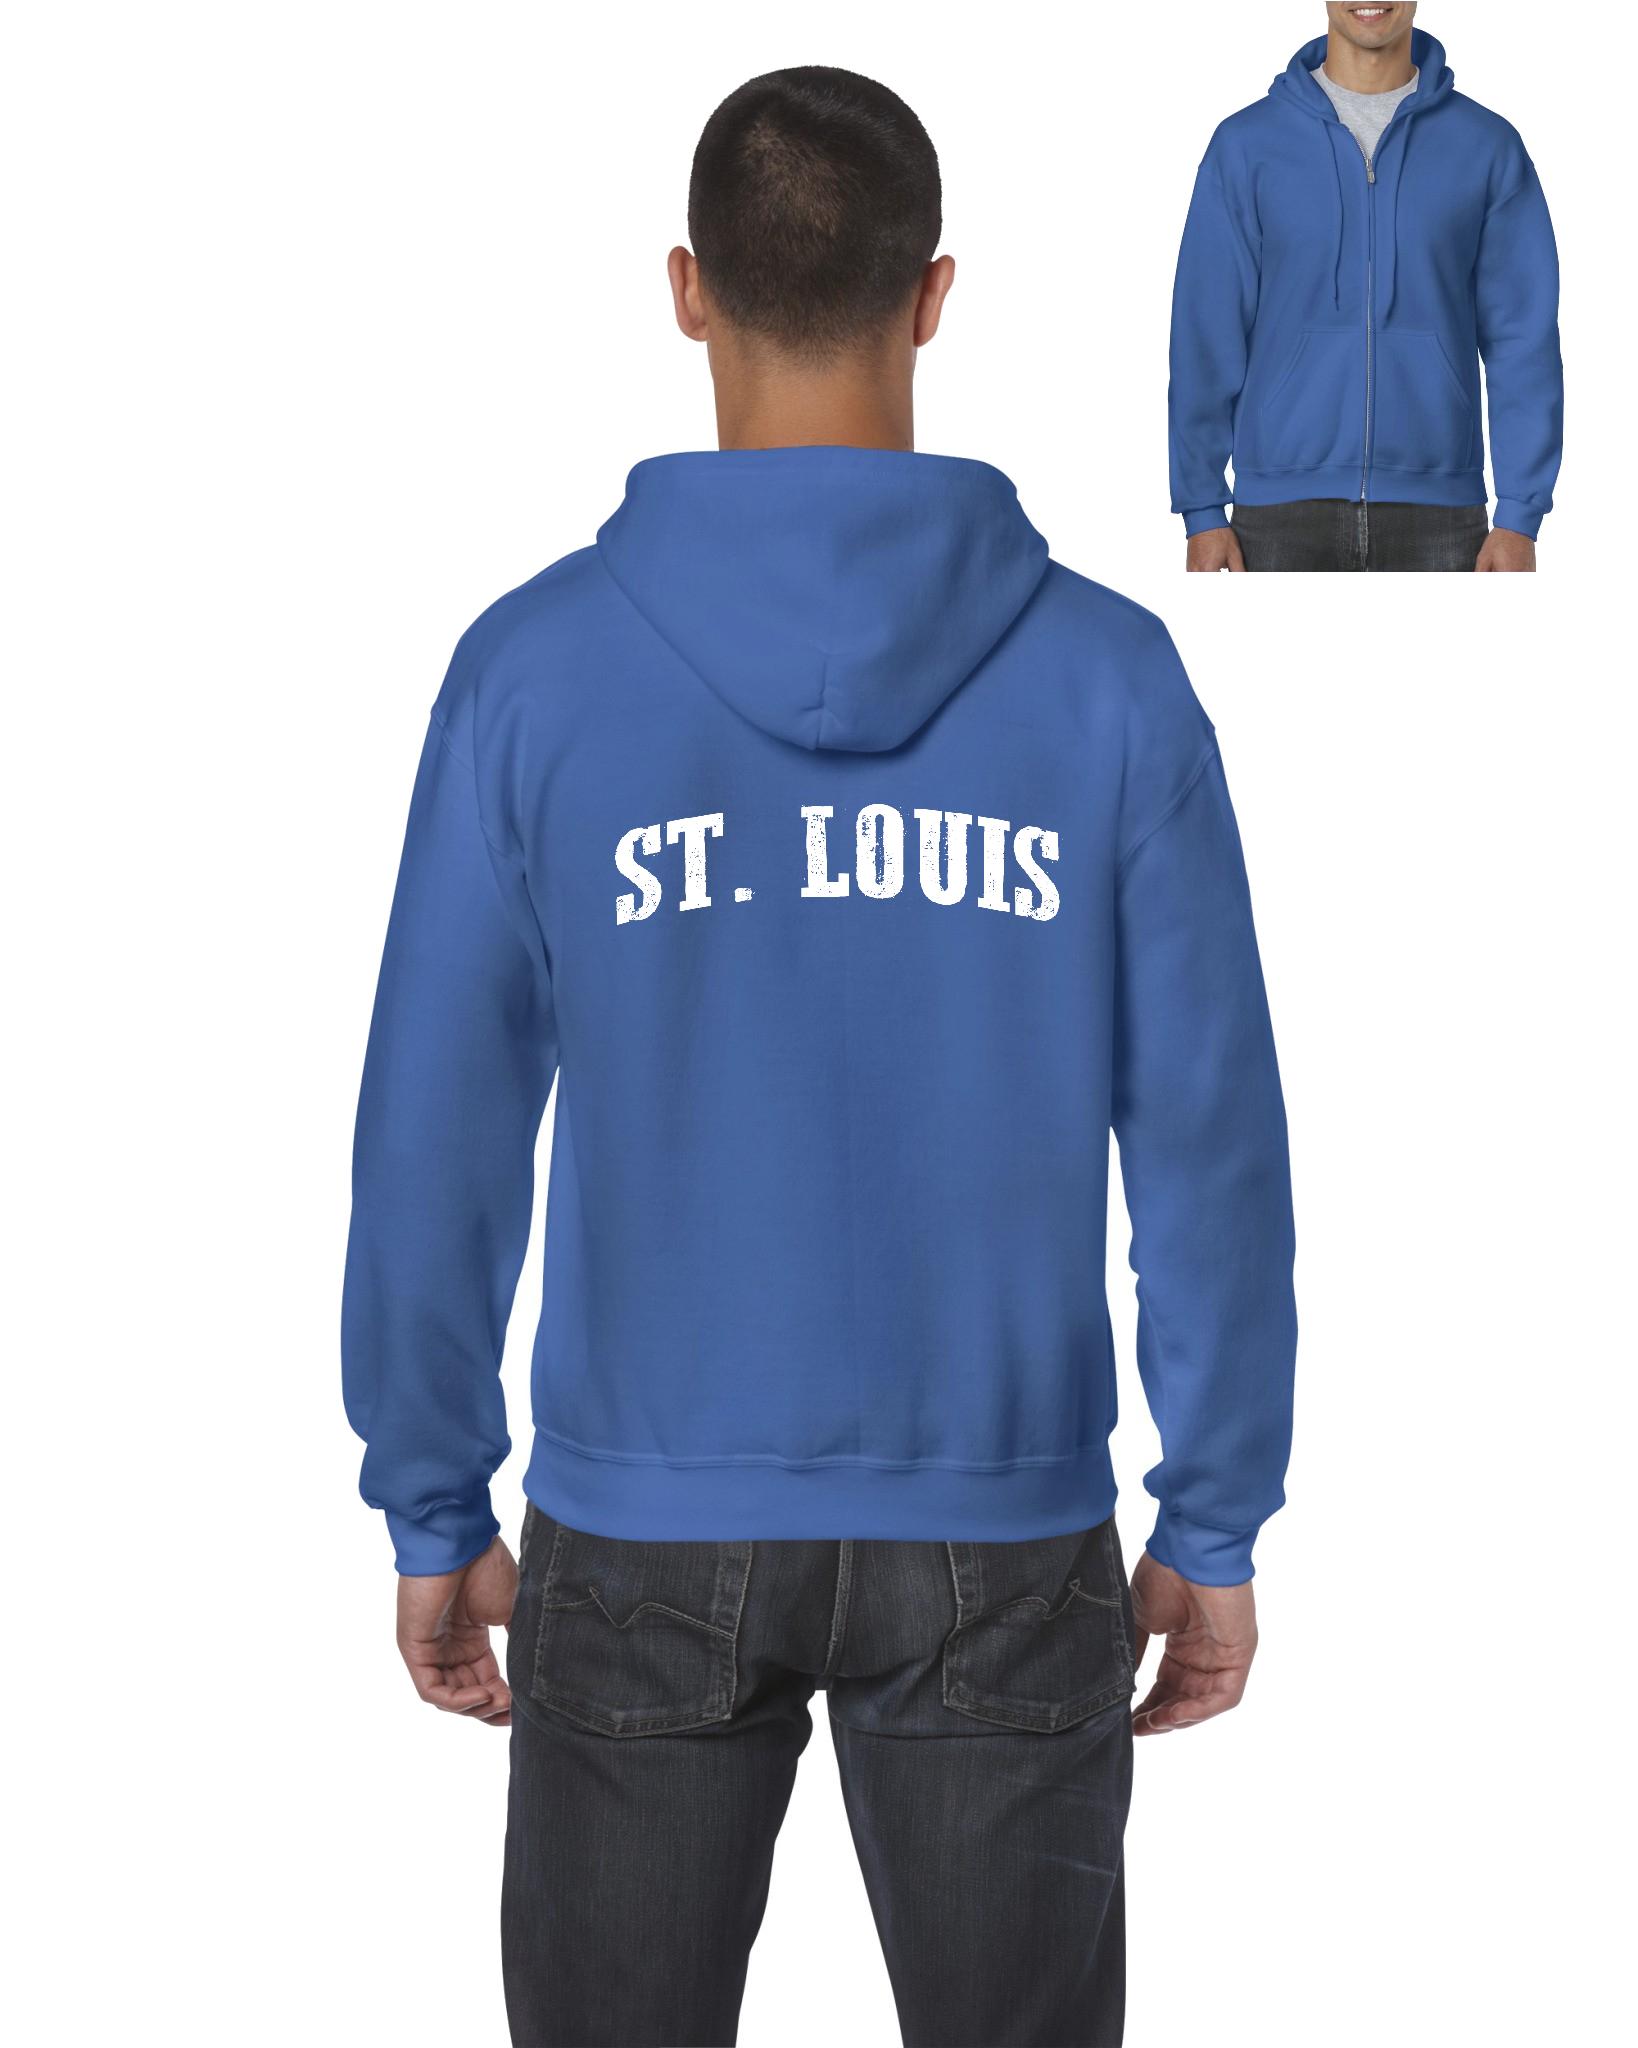 Artix - Men's Sweatshirt Full-Zip Pullover - St. Louis - image 1 of 5